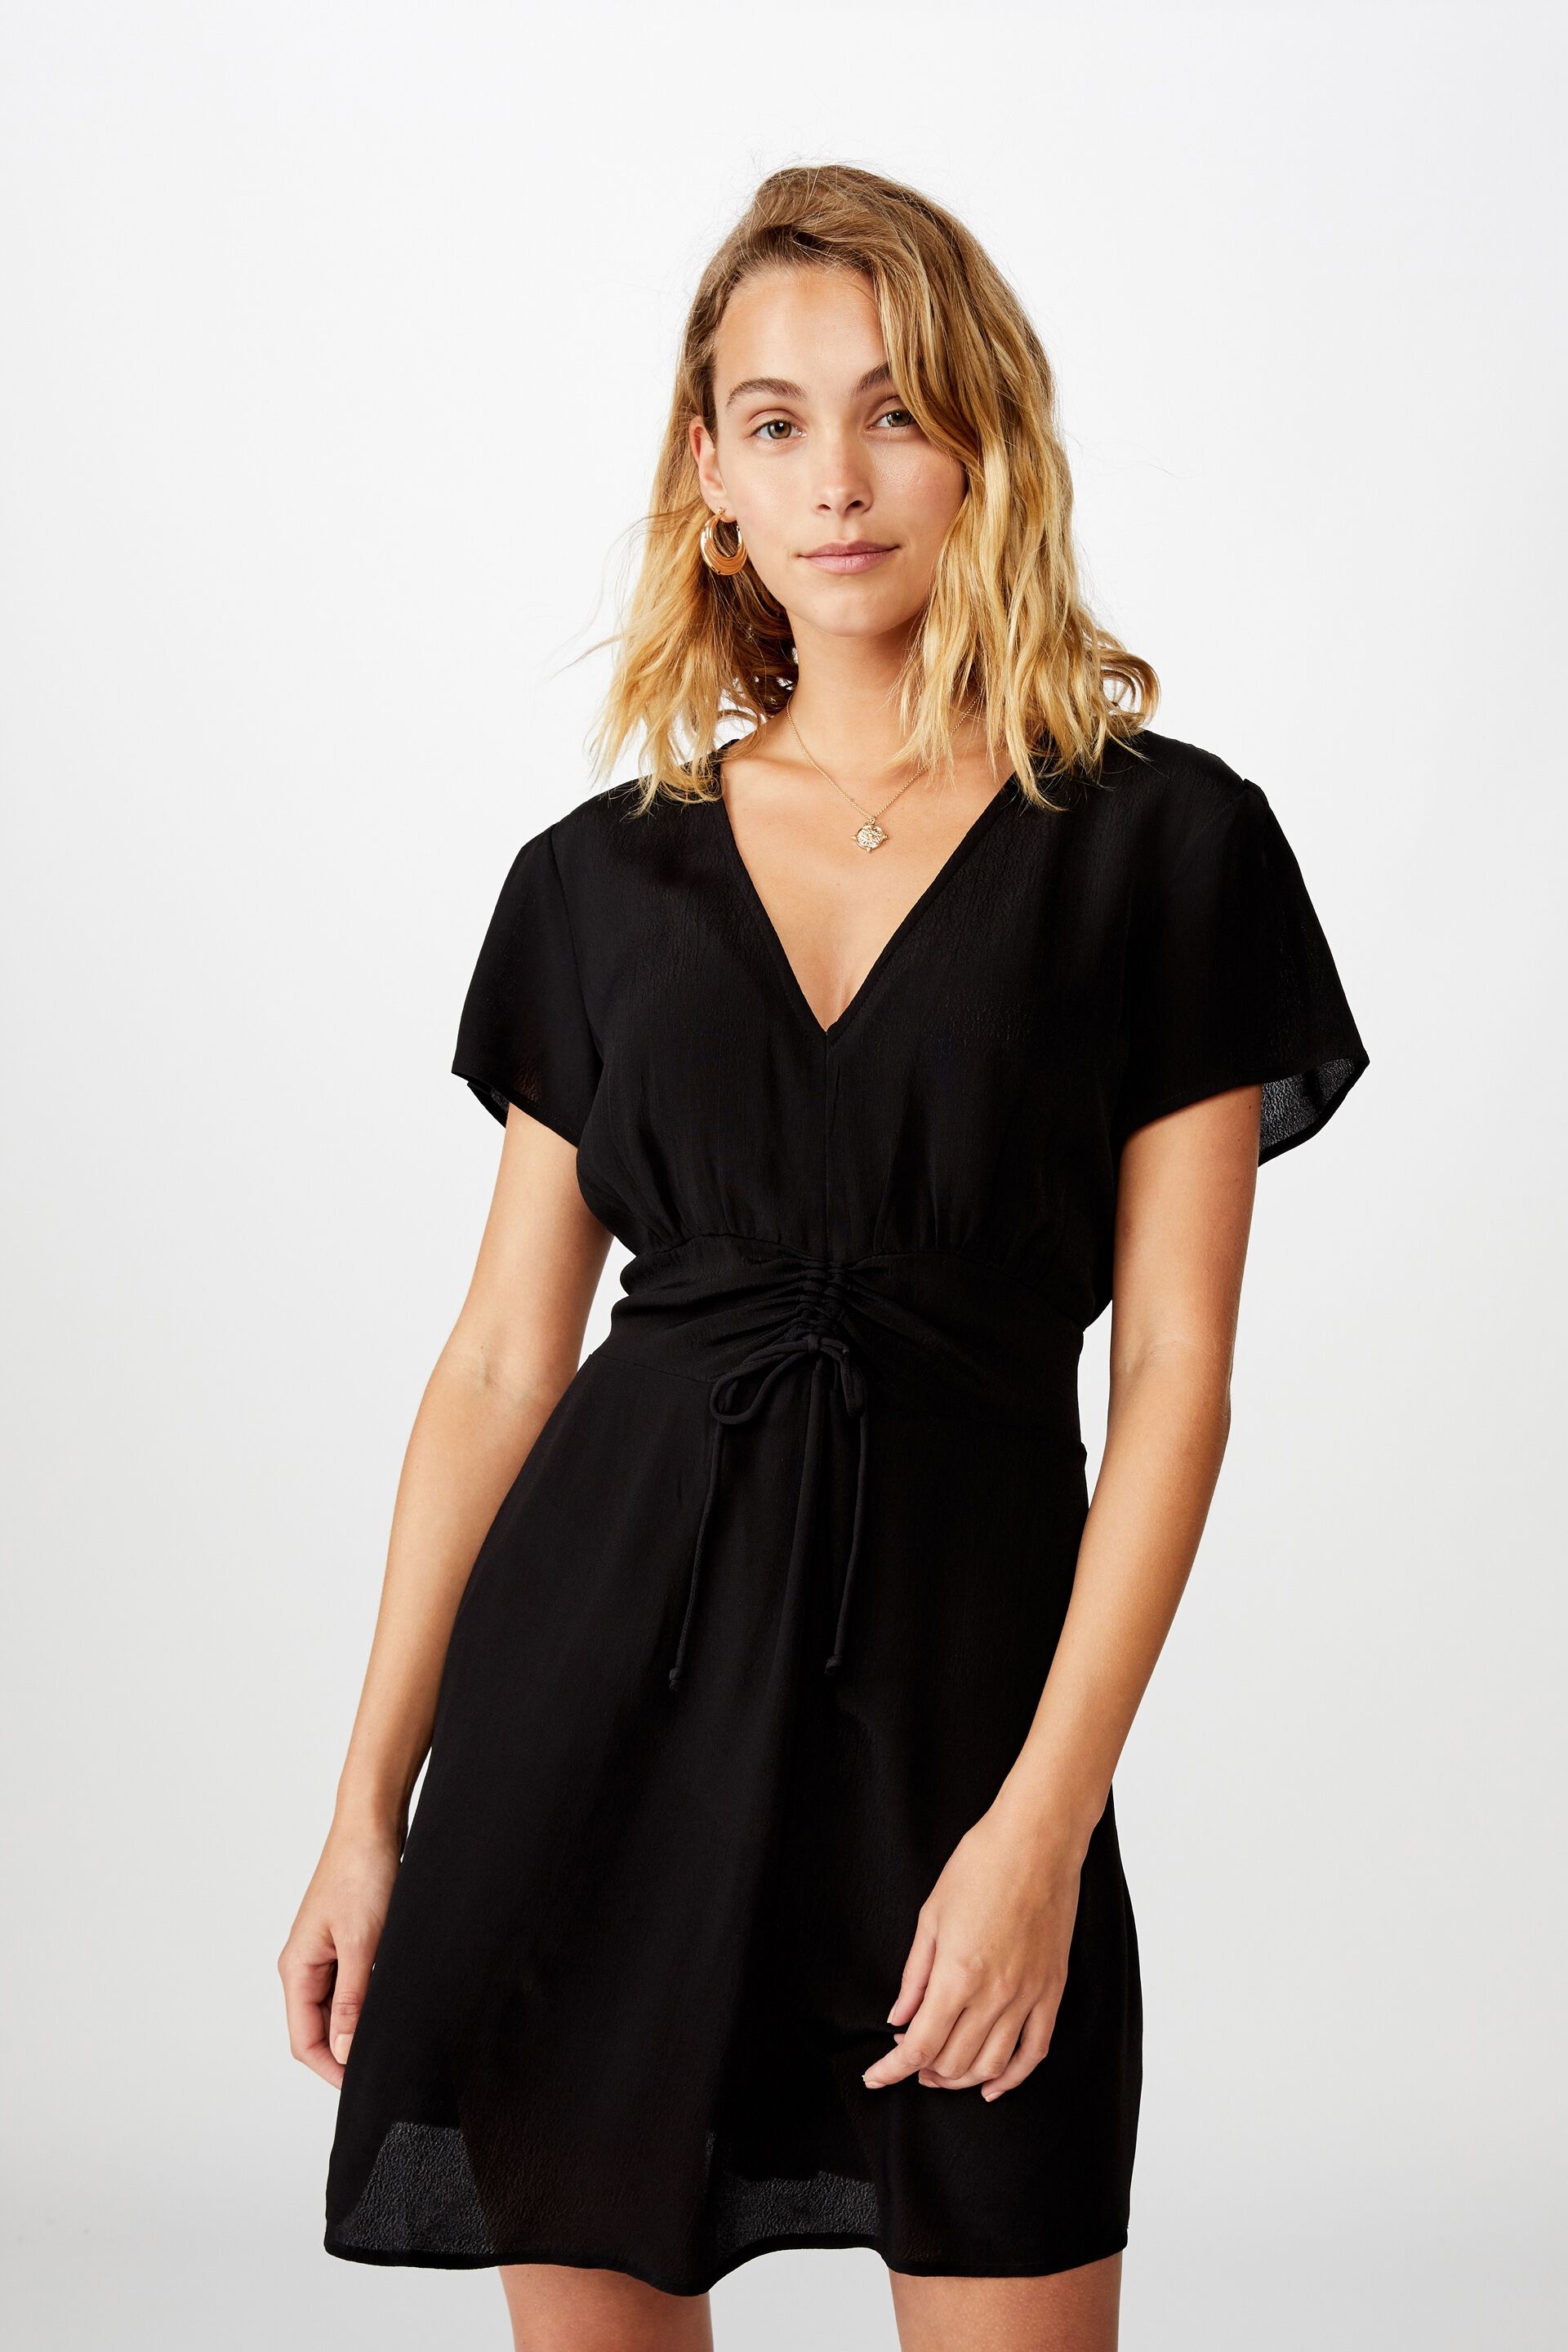 Little Black Dress Near Me Sale Online ...